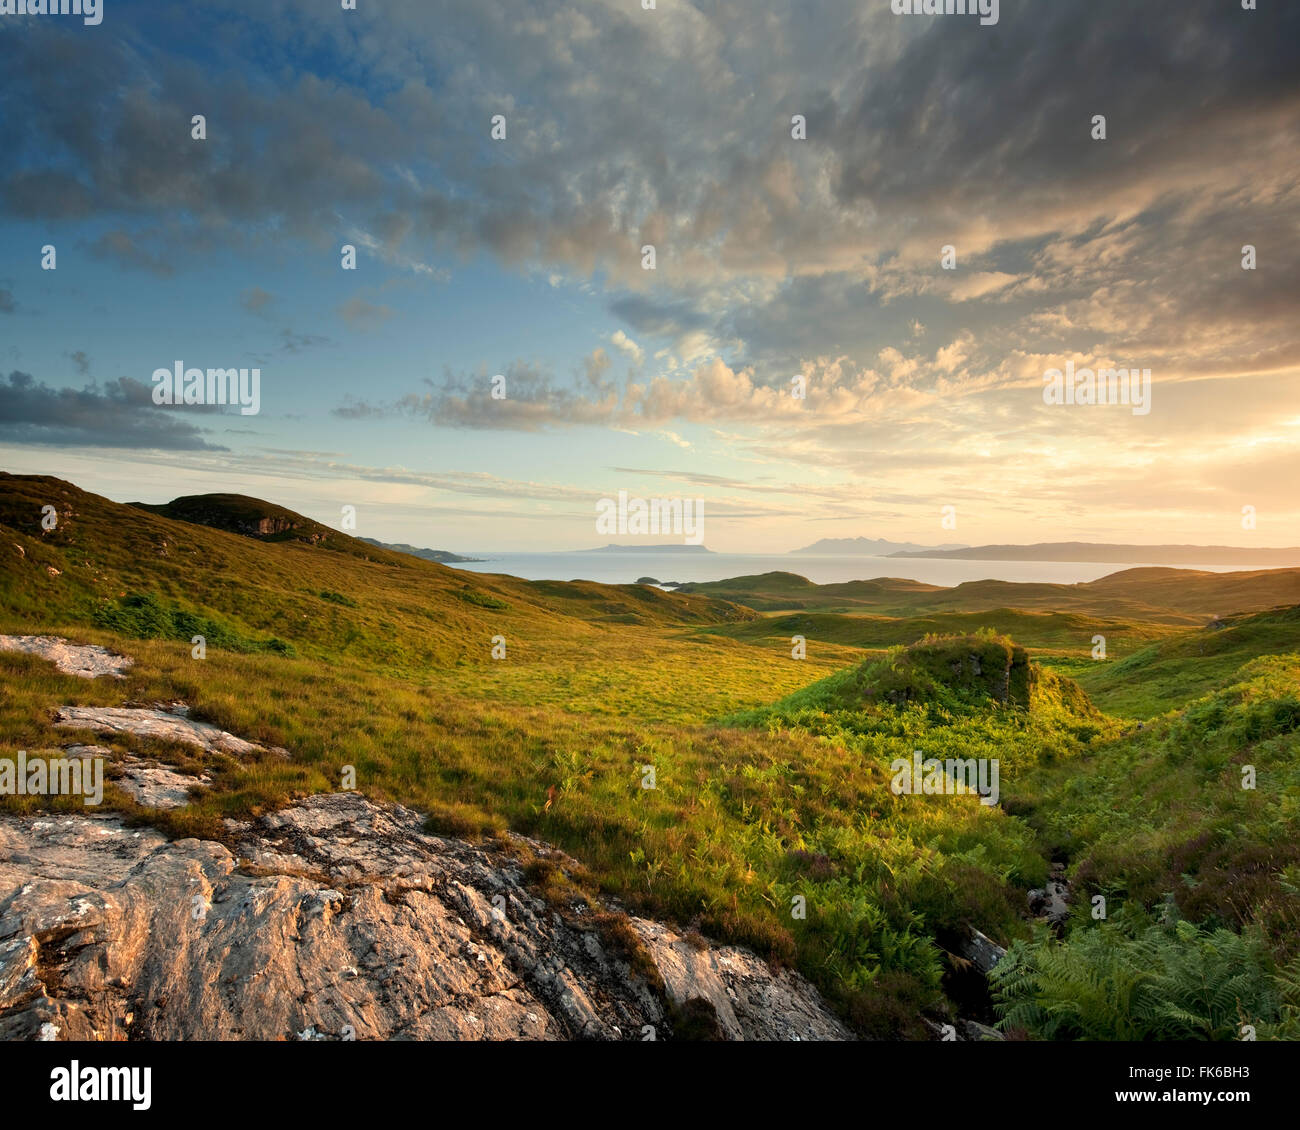 Rural, coastal scene at sunset, Highlands of Scotland, United Kingdom, Europe Stock Photo